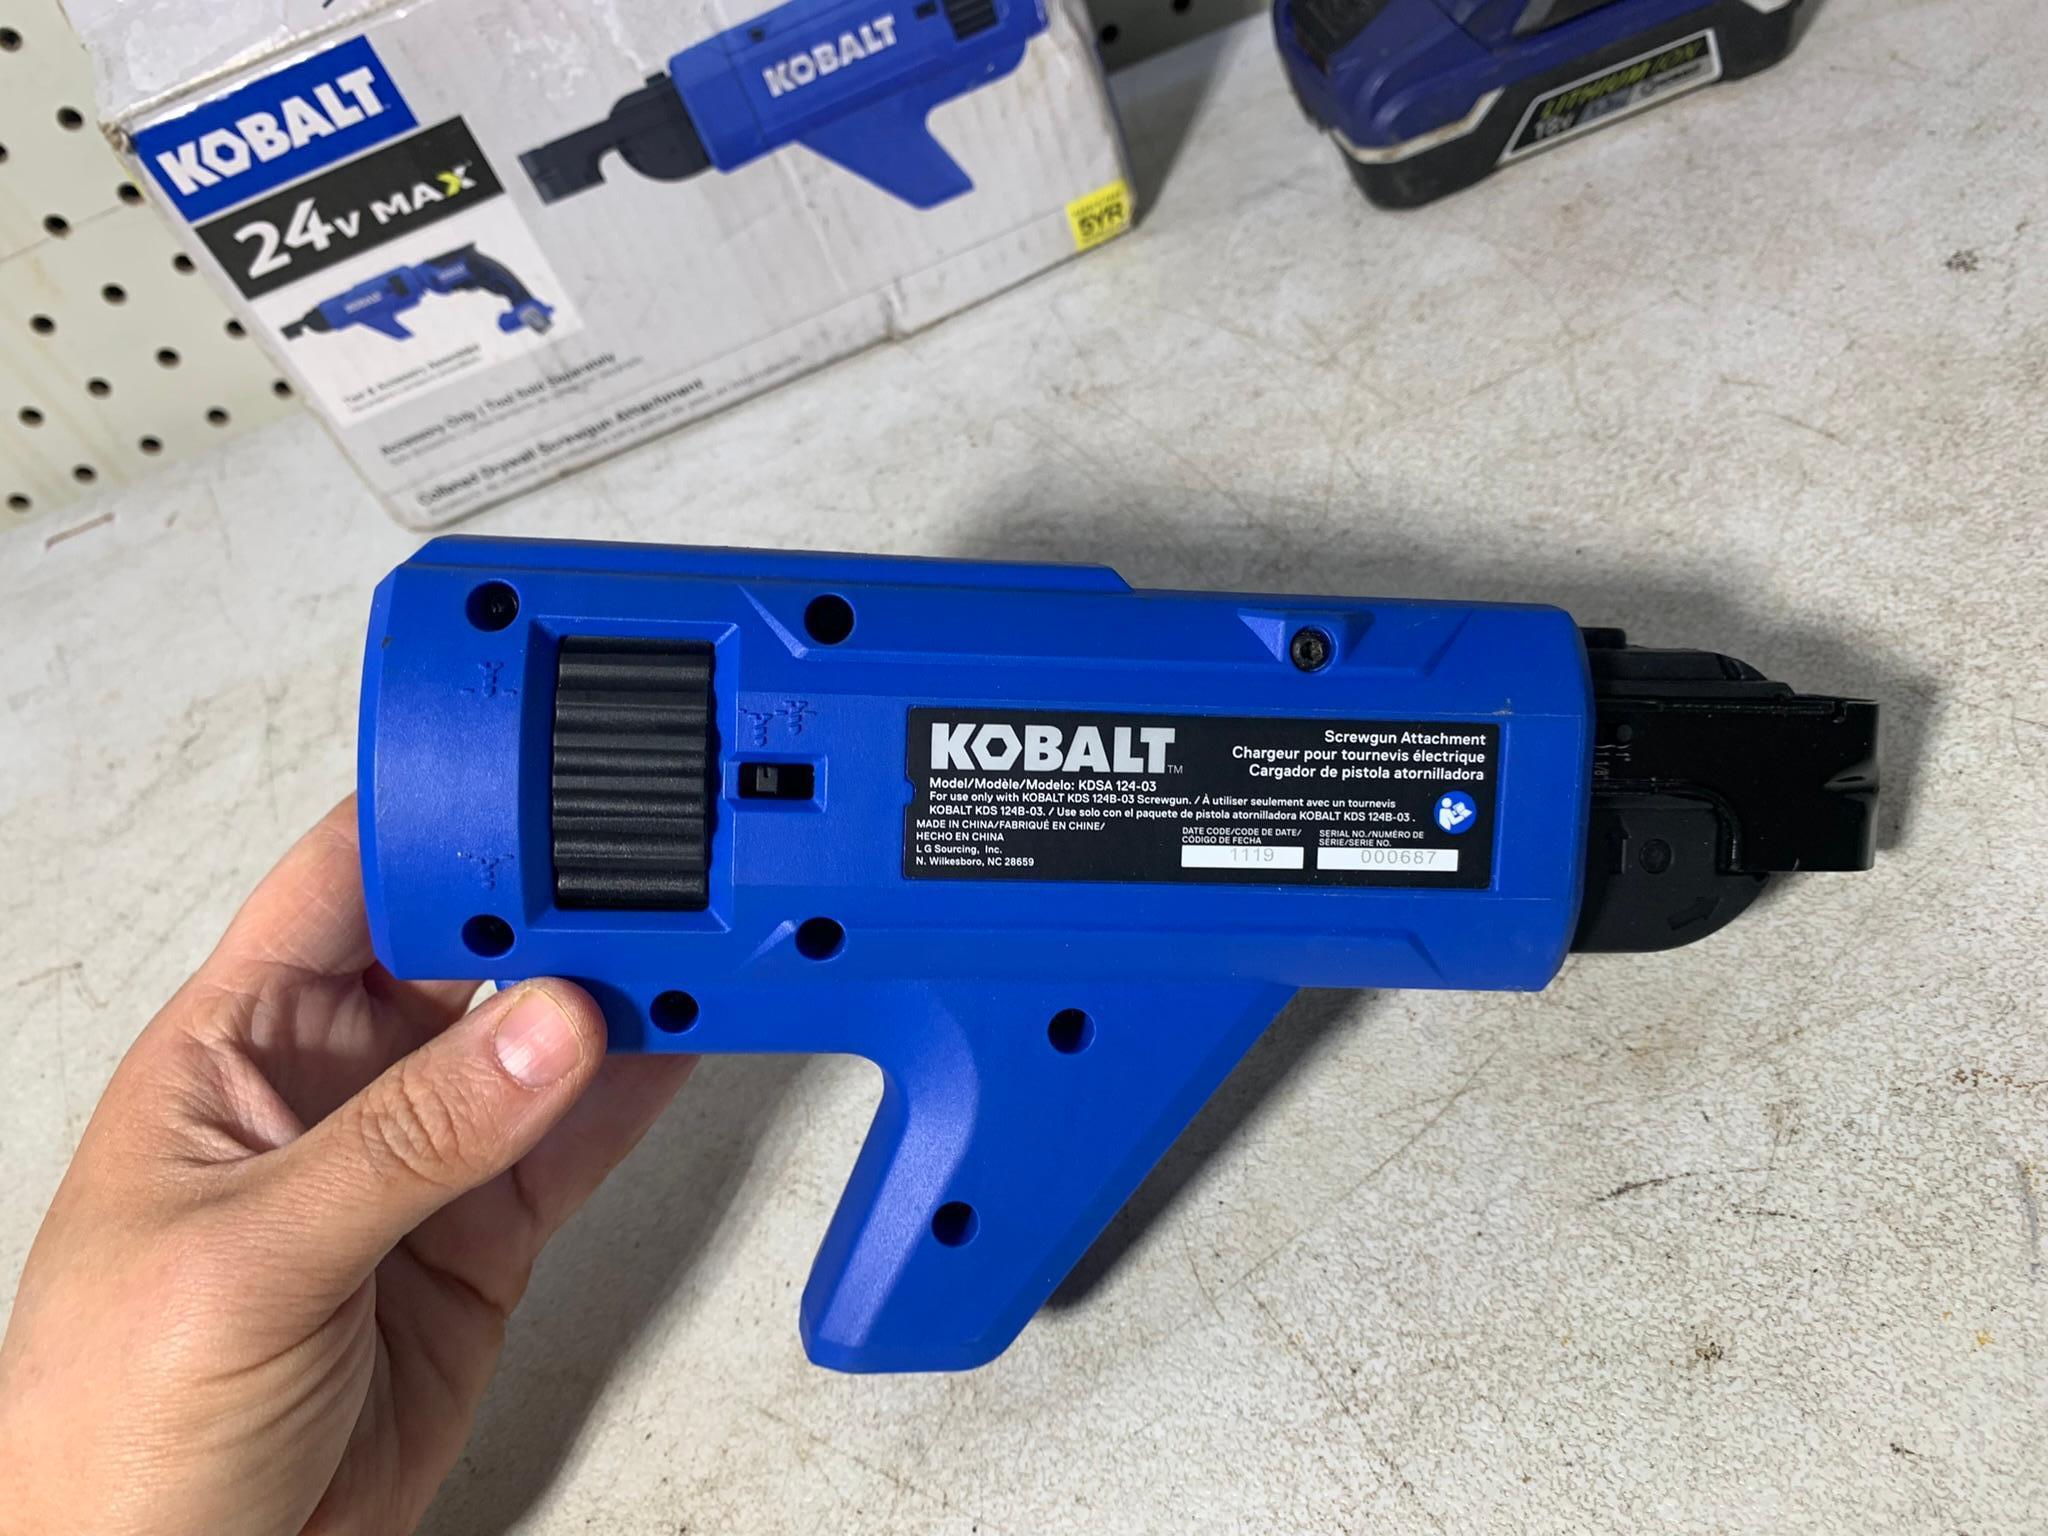 Kobalt Impact Driver, Kobalt Screw Gun, Craftsman Socket Wrench Set, Kobalt Bit Set